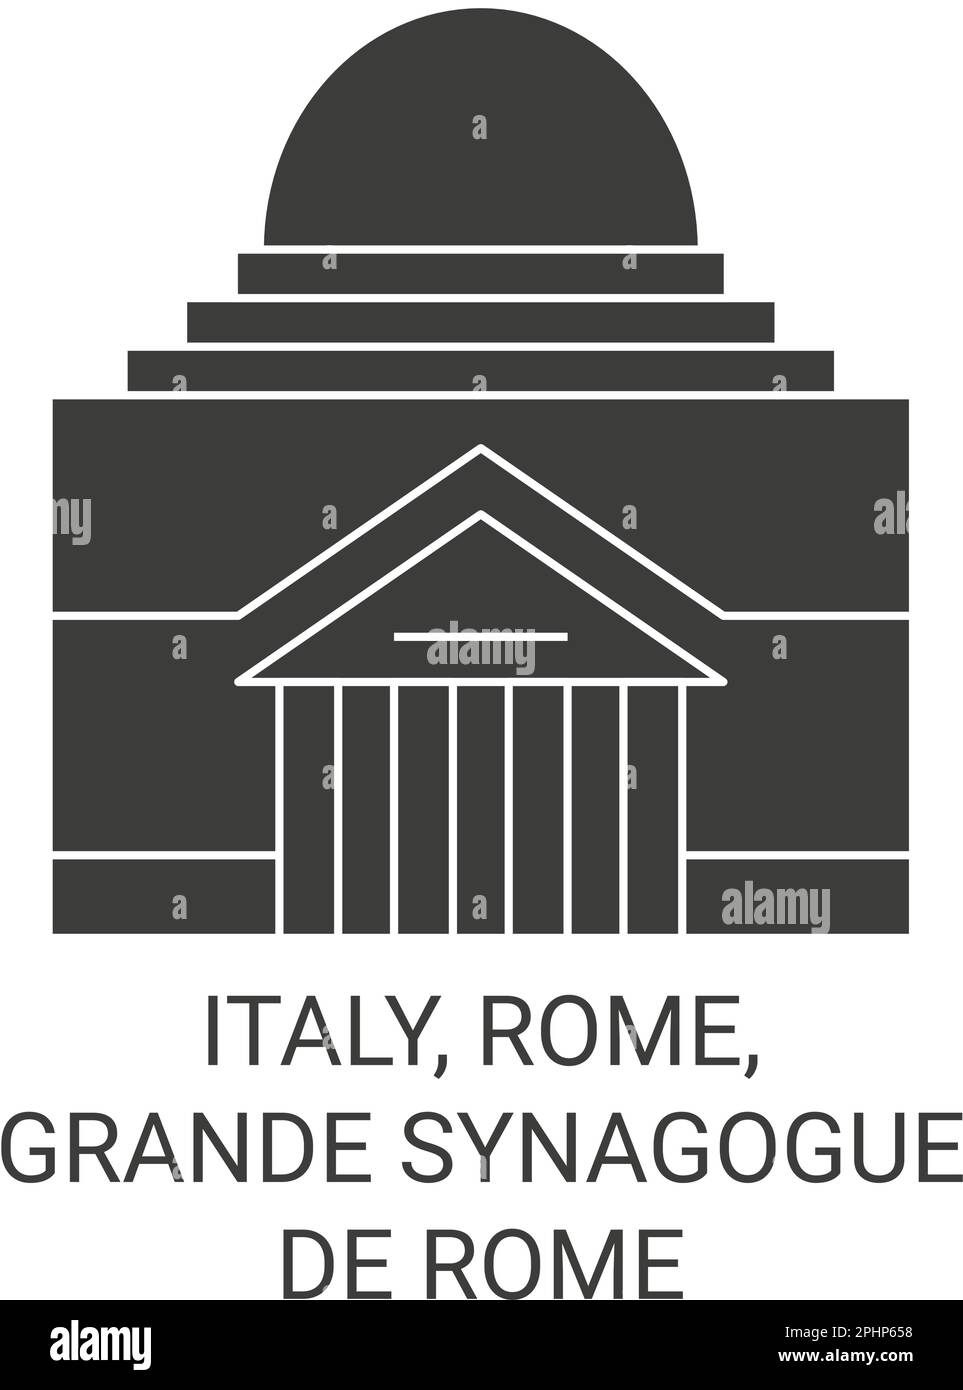 Italien, Rom, Grande Synagoge De Rome. Darstellung des Vektors der Orientierungspunkte für die Reise Stock Vektor